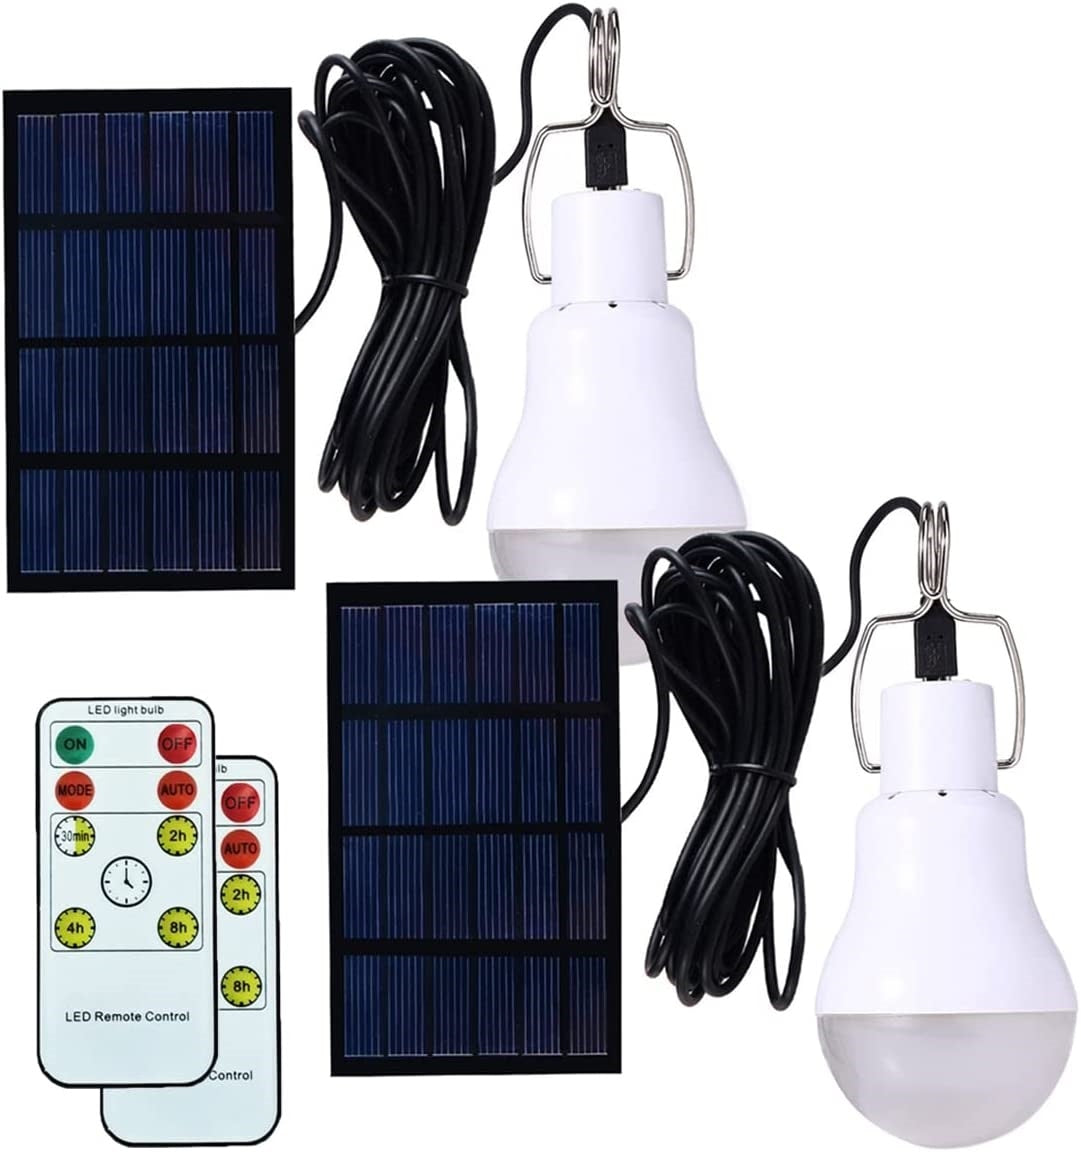 Lâmpada solar LED luz à prova d'água ao ar livre 5V carregada USB pendurada luz solar de emergência lâmpada alimentada portátil poderosa casa interna